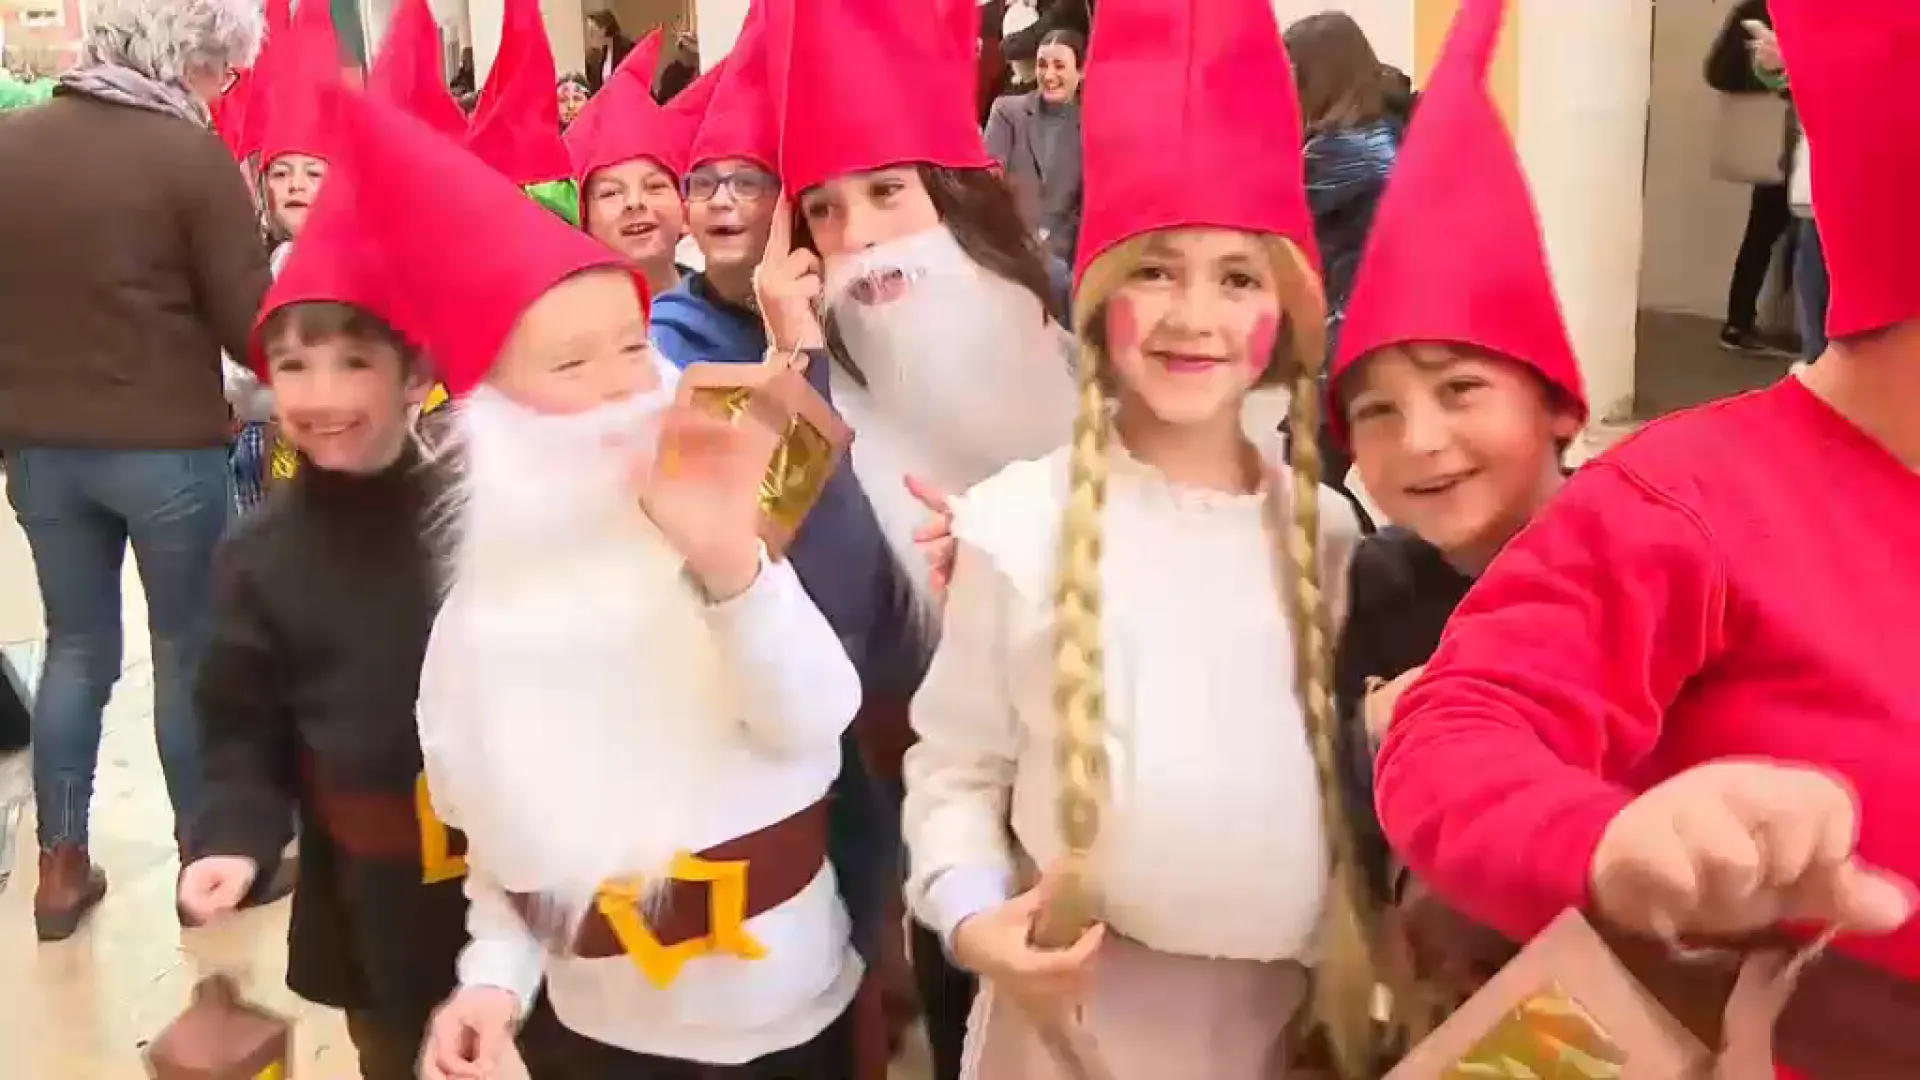 Bestioles i criatures fantàstiques sortides de les escoles donen vida al bosc del Carnaval de Ciutadella